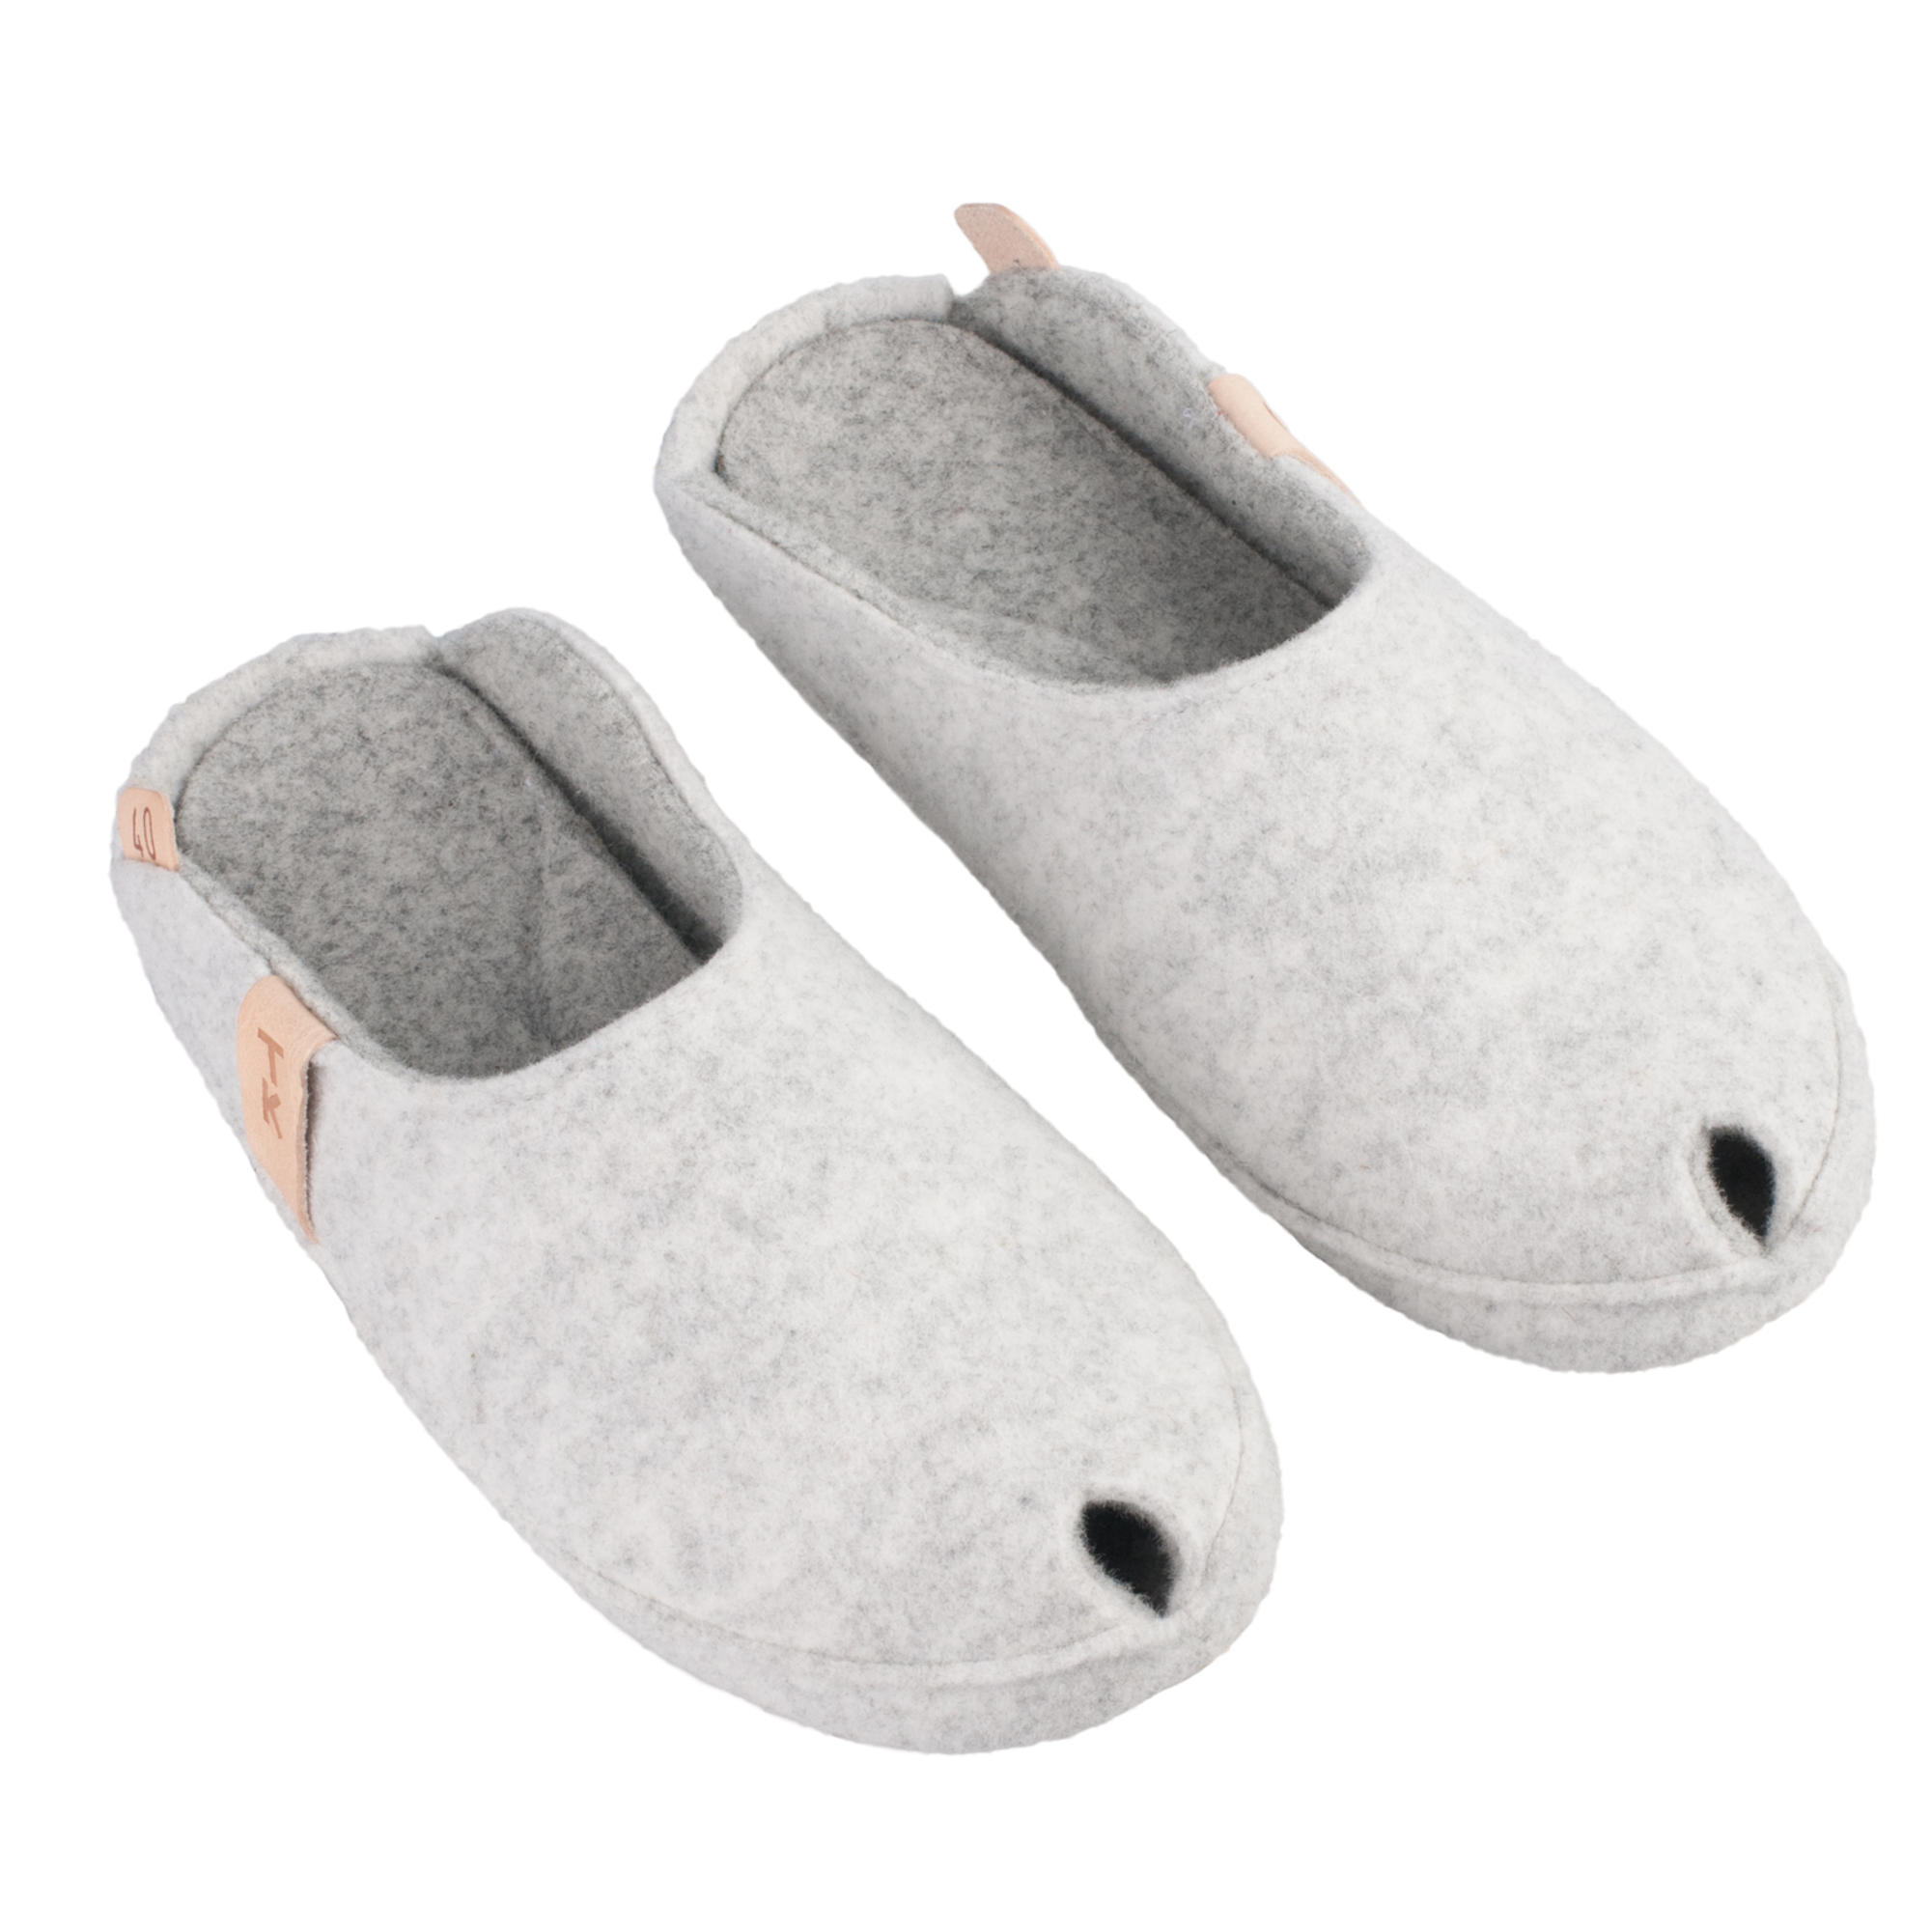 Indoor slippers, handmade in EU 